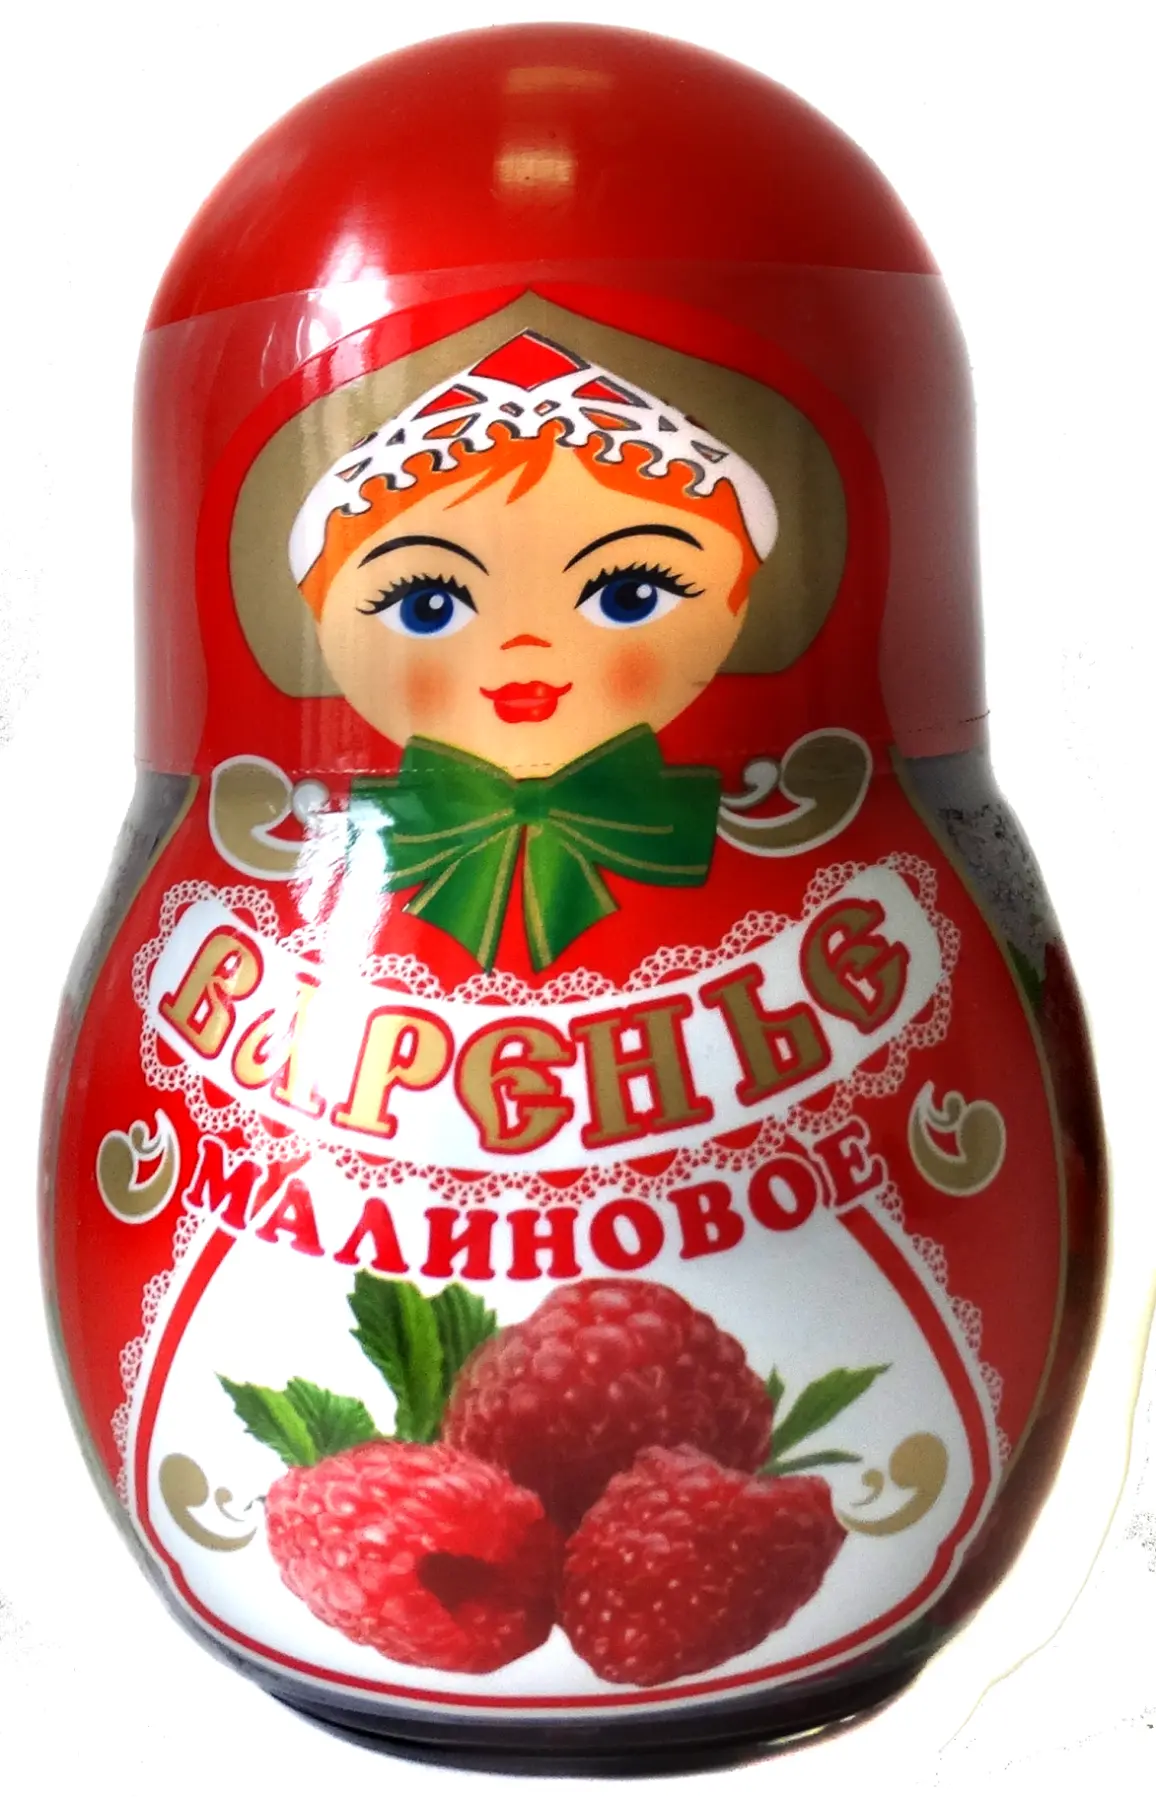 продукты питания от производителя в Москве и Московской области 5